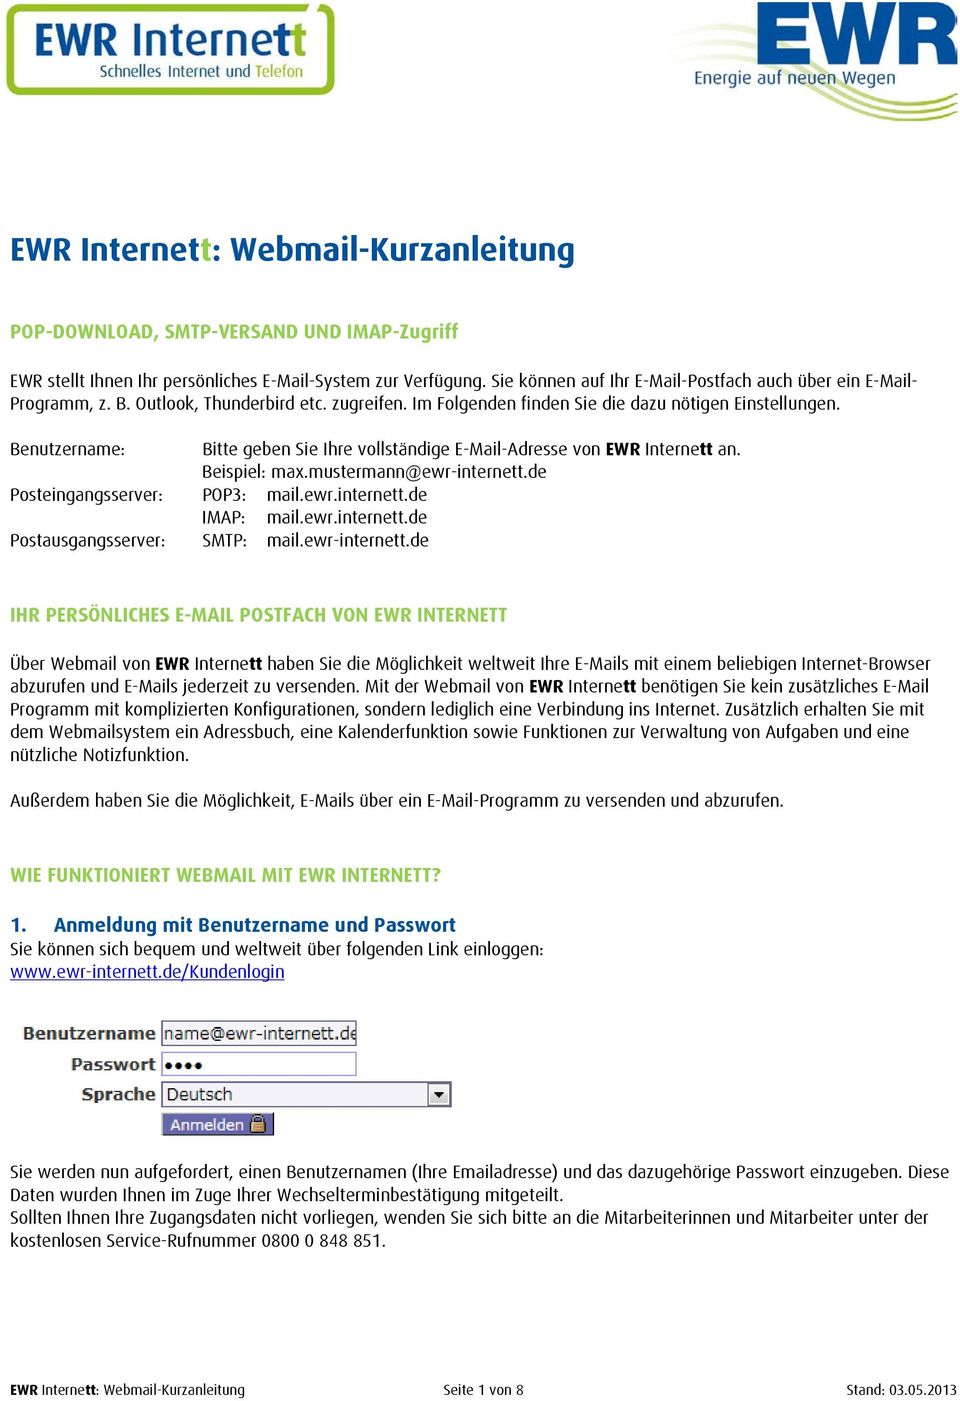 Benutzername: Bitte geben Sie Ihre vollständige E-Mail-Adresse von EWR Internett an. Beispiel: max.mustermann@ewr-internett.de Posteingangsserver: POP3: mail.ewr.internett.de IMAP: mail.ewr.internett.de Postausgangsserver: SMTP: mail.